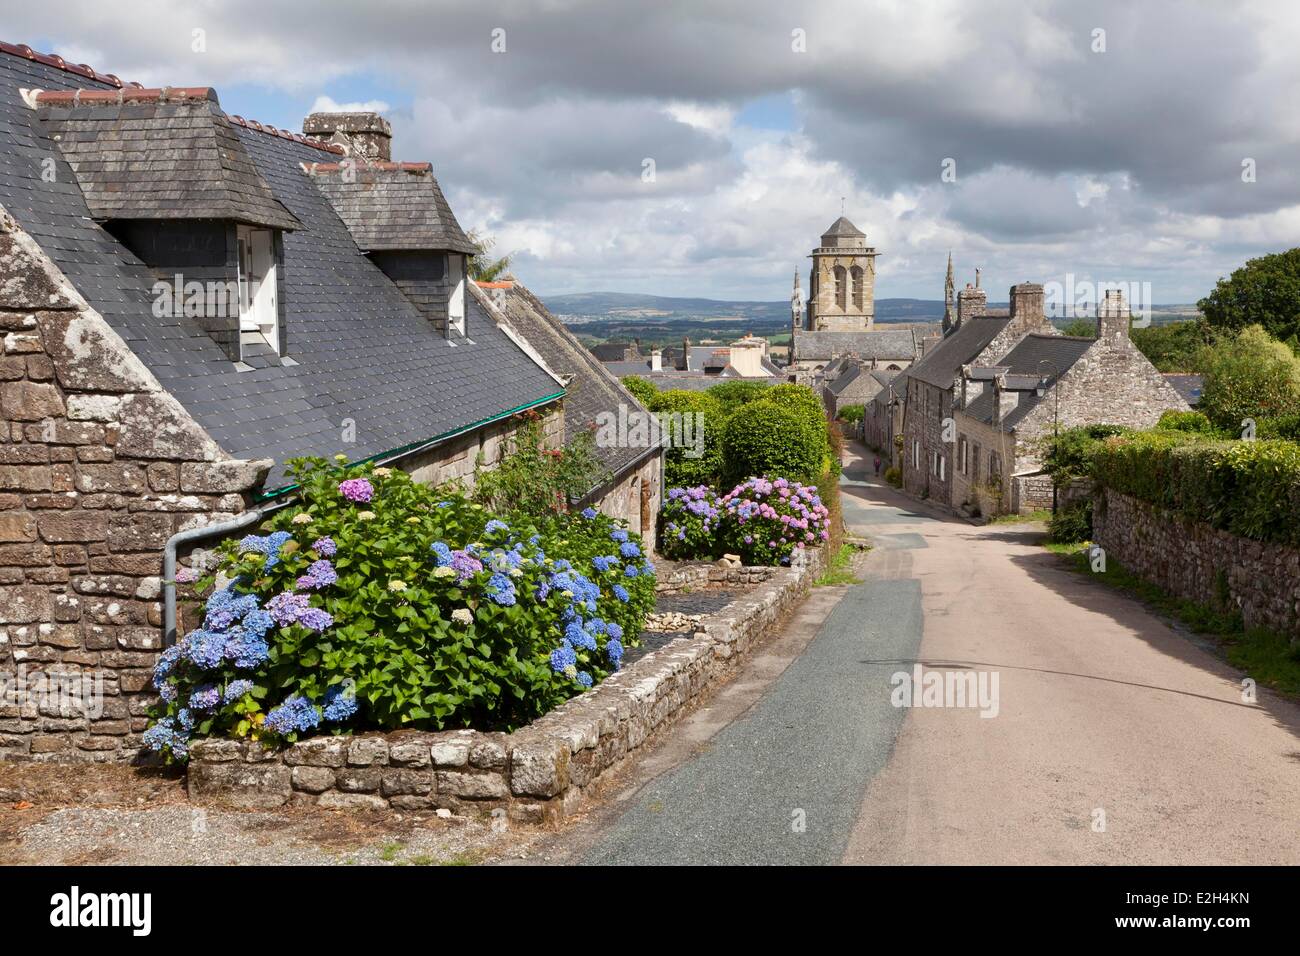 Finistere Locronan étiqueté Les Plus Beaux Villages de France (Les Plus Beaux Villages de France) rue pittoresque avec l'église Saint Ronan en arrière-plan Banque D'Images